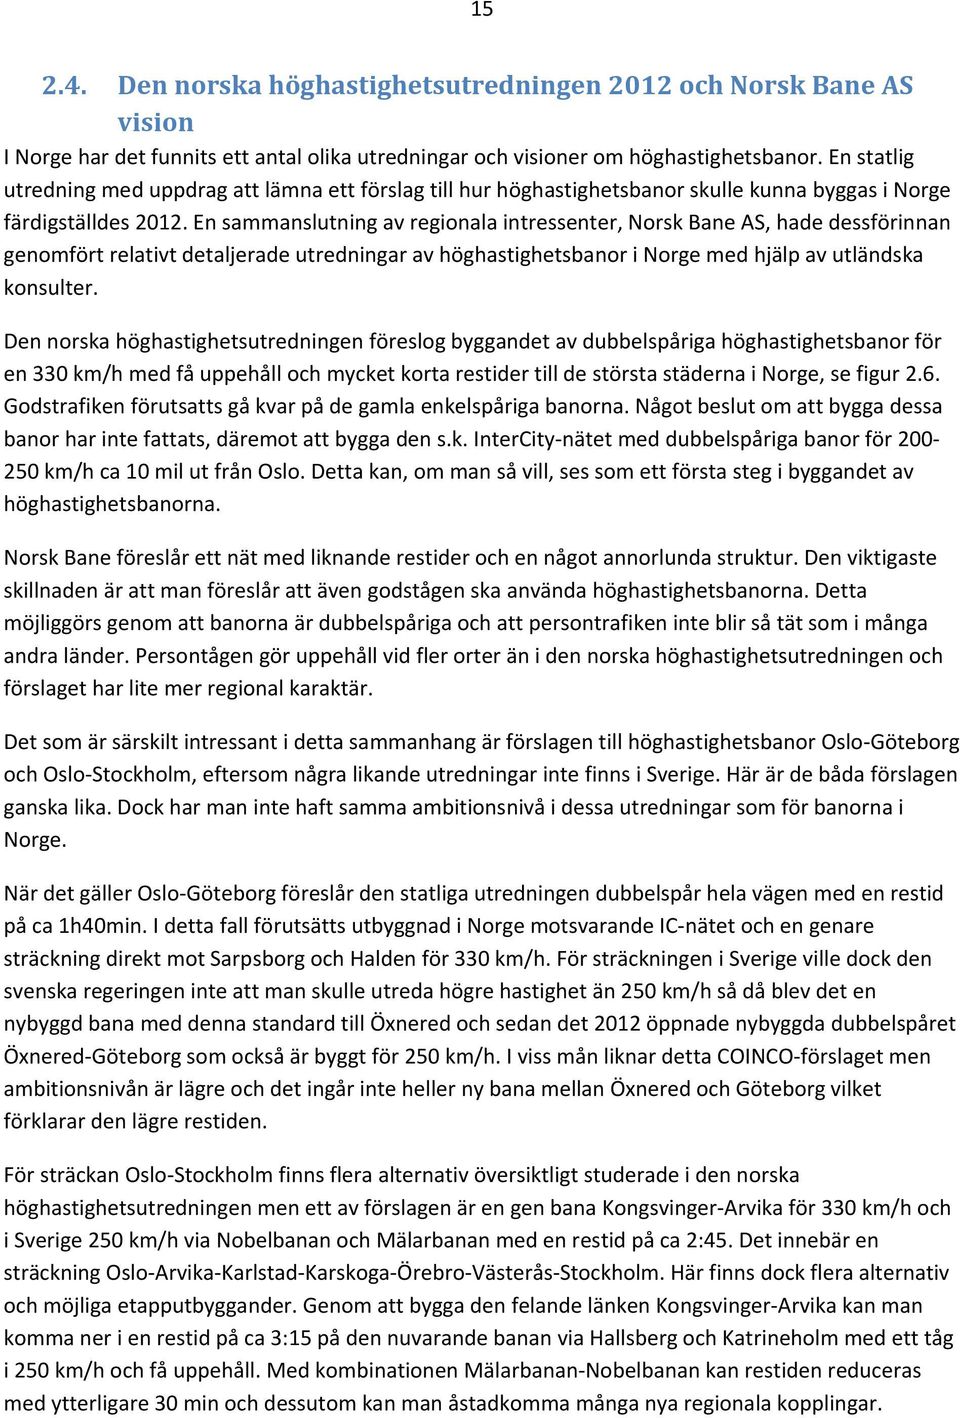 En sammanslutning av regionala intressenter, Norsk Bane AS, hade dessförinnan genomfört relativt detaljerade utredningar av höghastighetsbanor i Norge med hjälp av utländska konsulter.